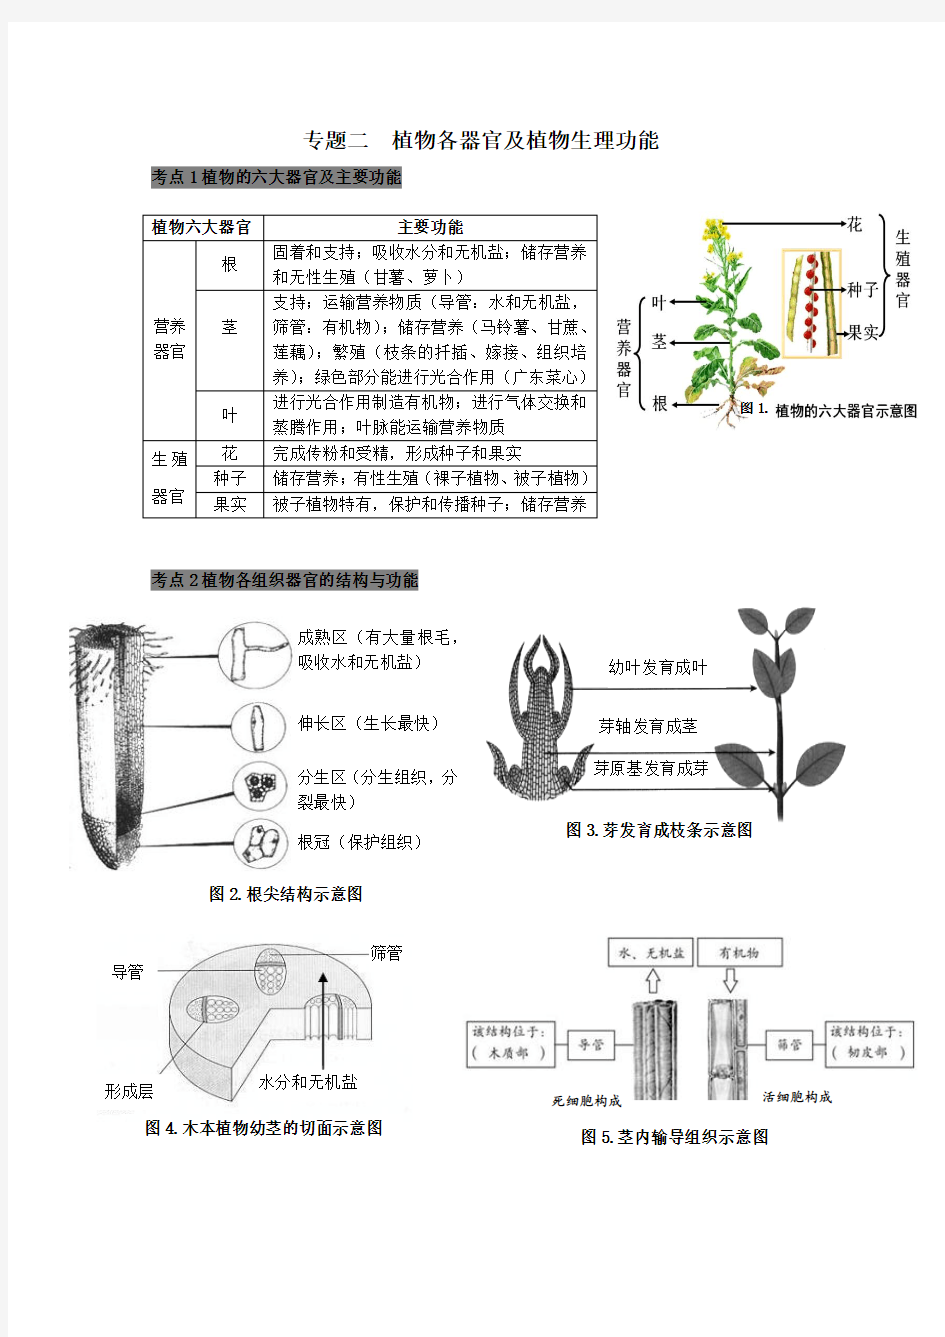 2 专题二  植物各器官及植物生理功能